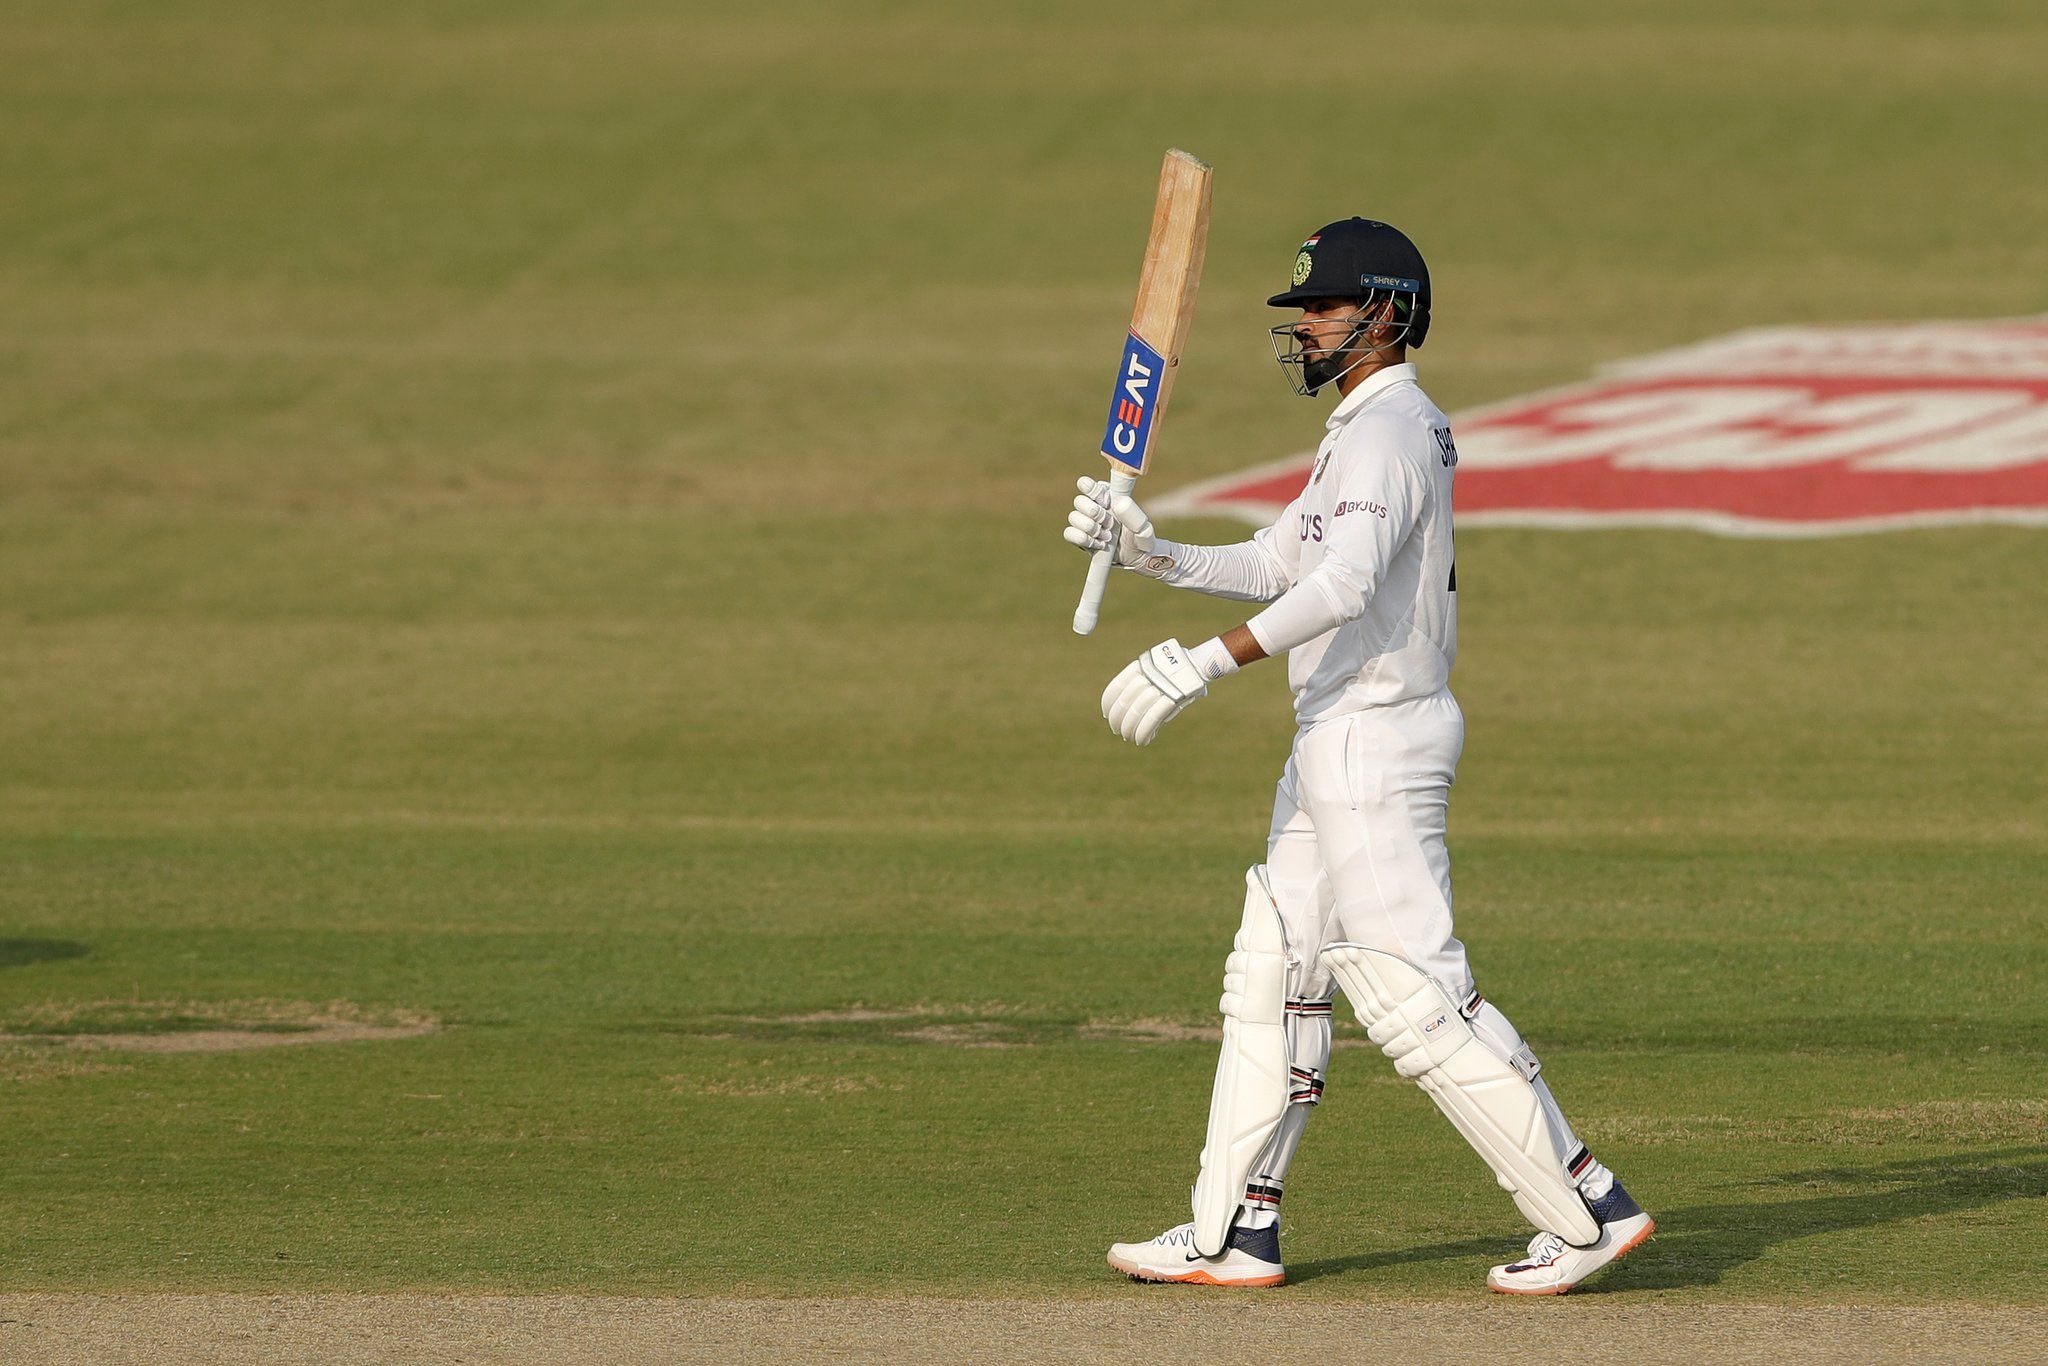 टेस्ट शतक जड़ श्रेयस अय्यर ने पूरी की कोच प्रवीण आमरे की ये शर्त, भारतीय बल्लेबाज ने बताया पूरा किस्सा